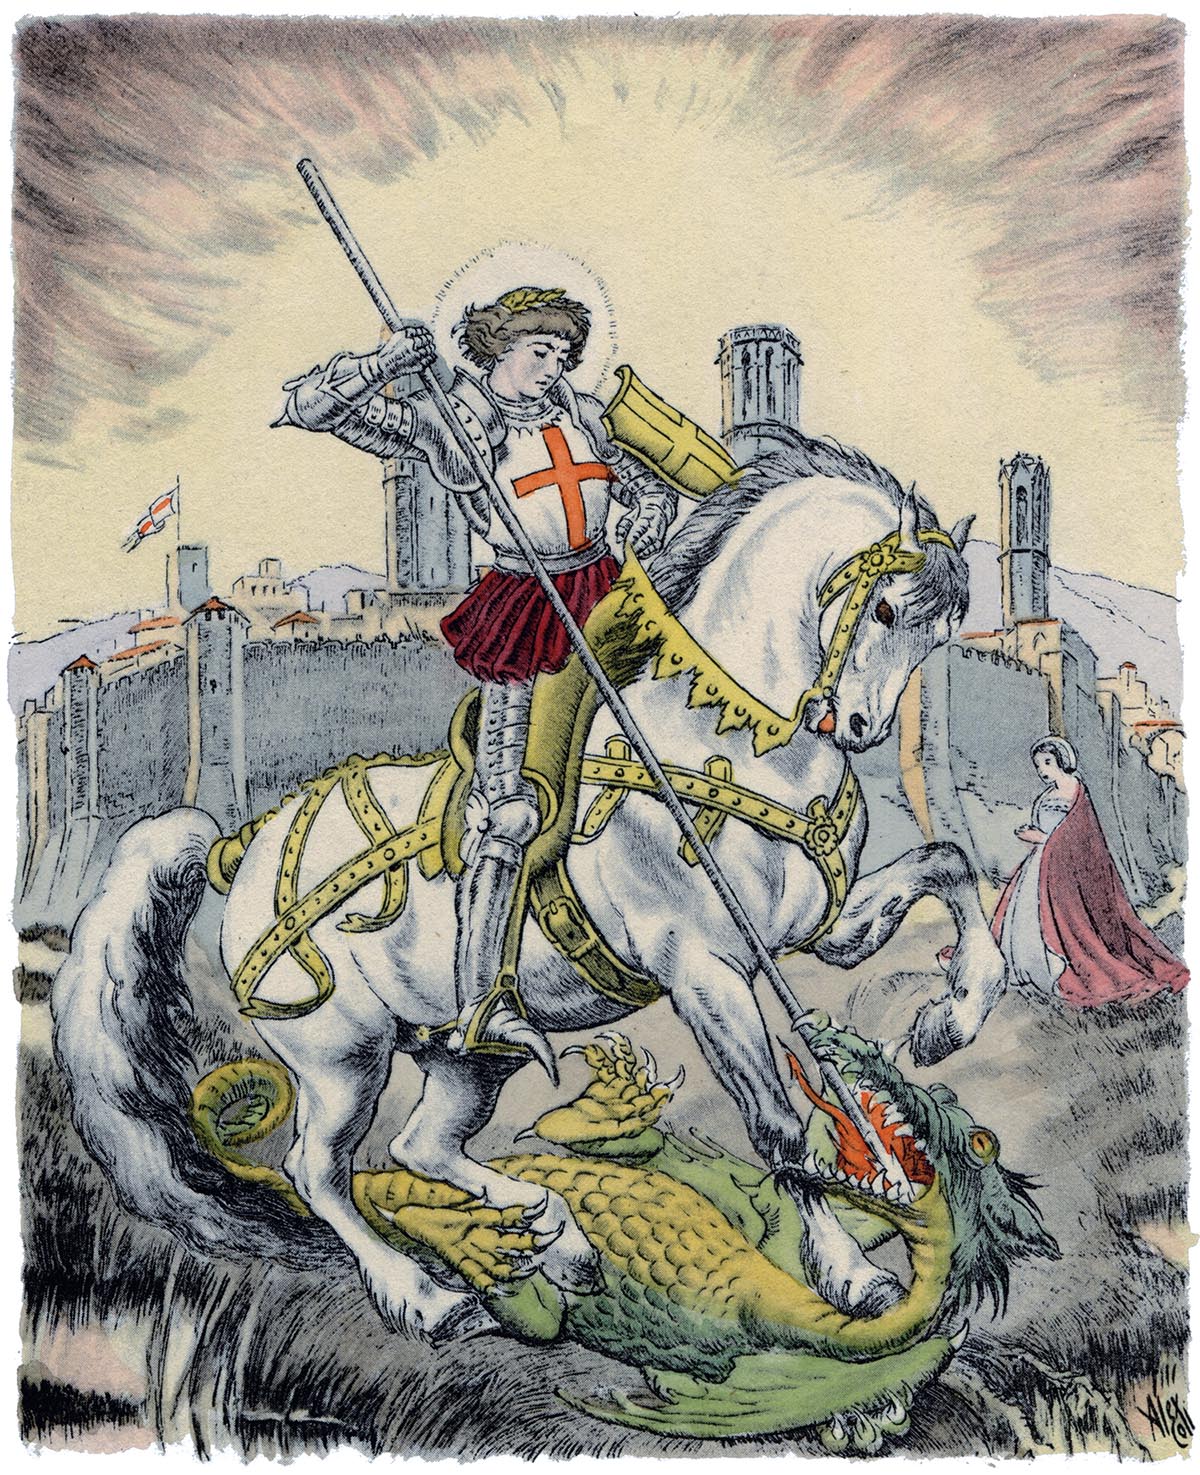 Sant Jordi sometiendo a dragón